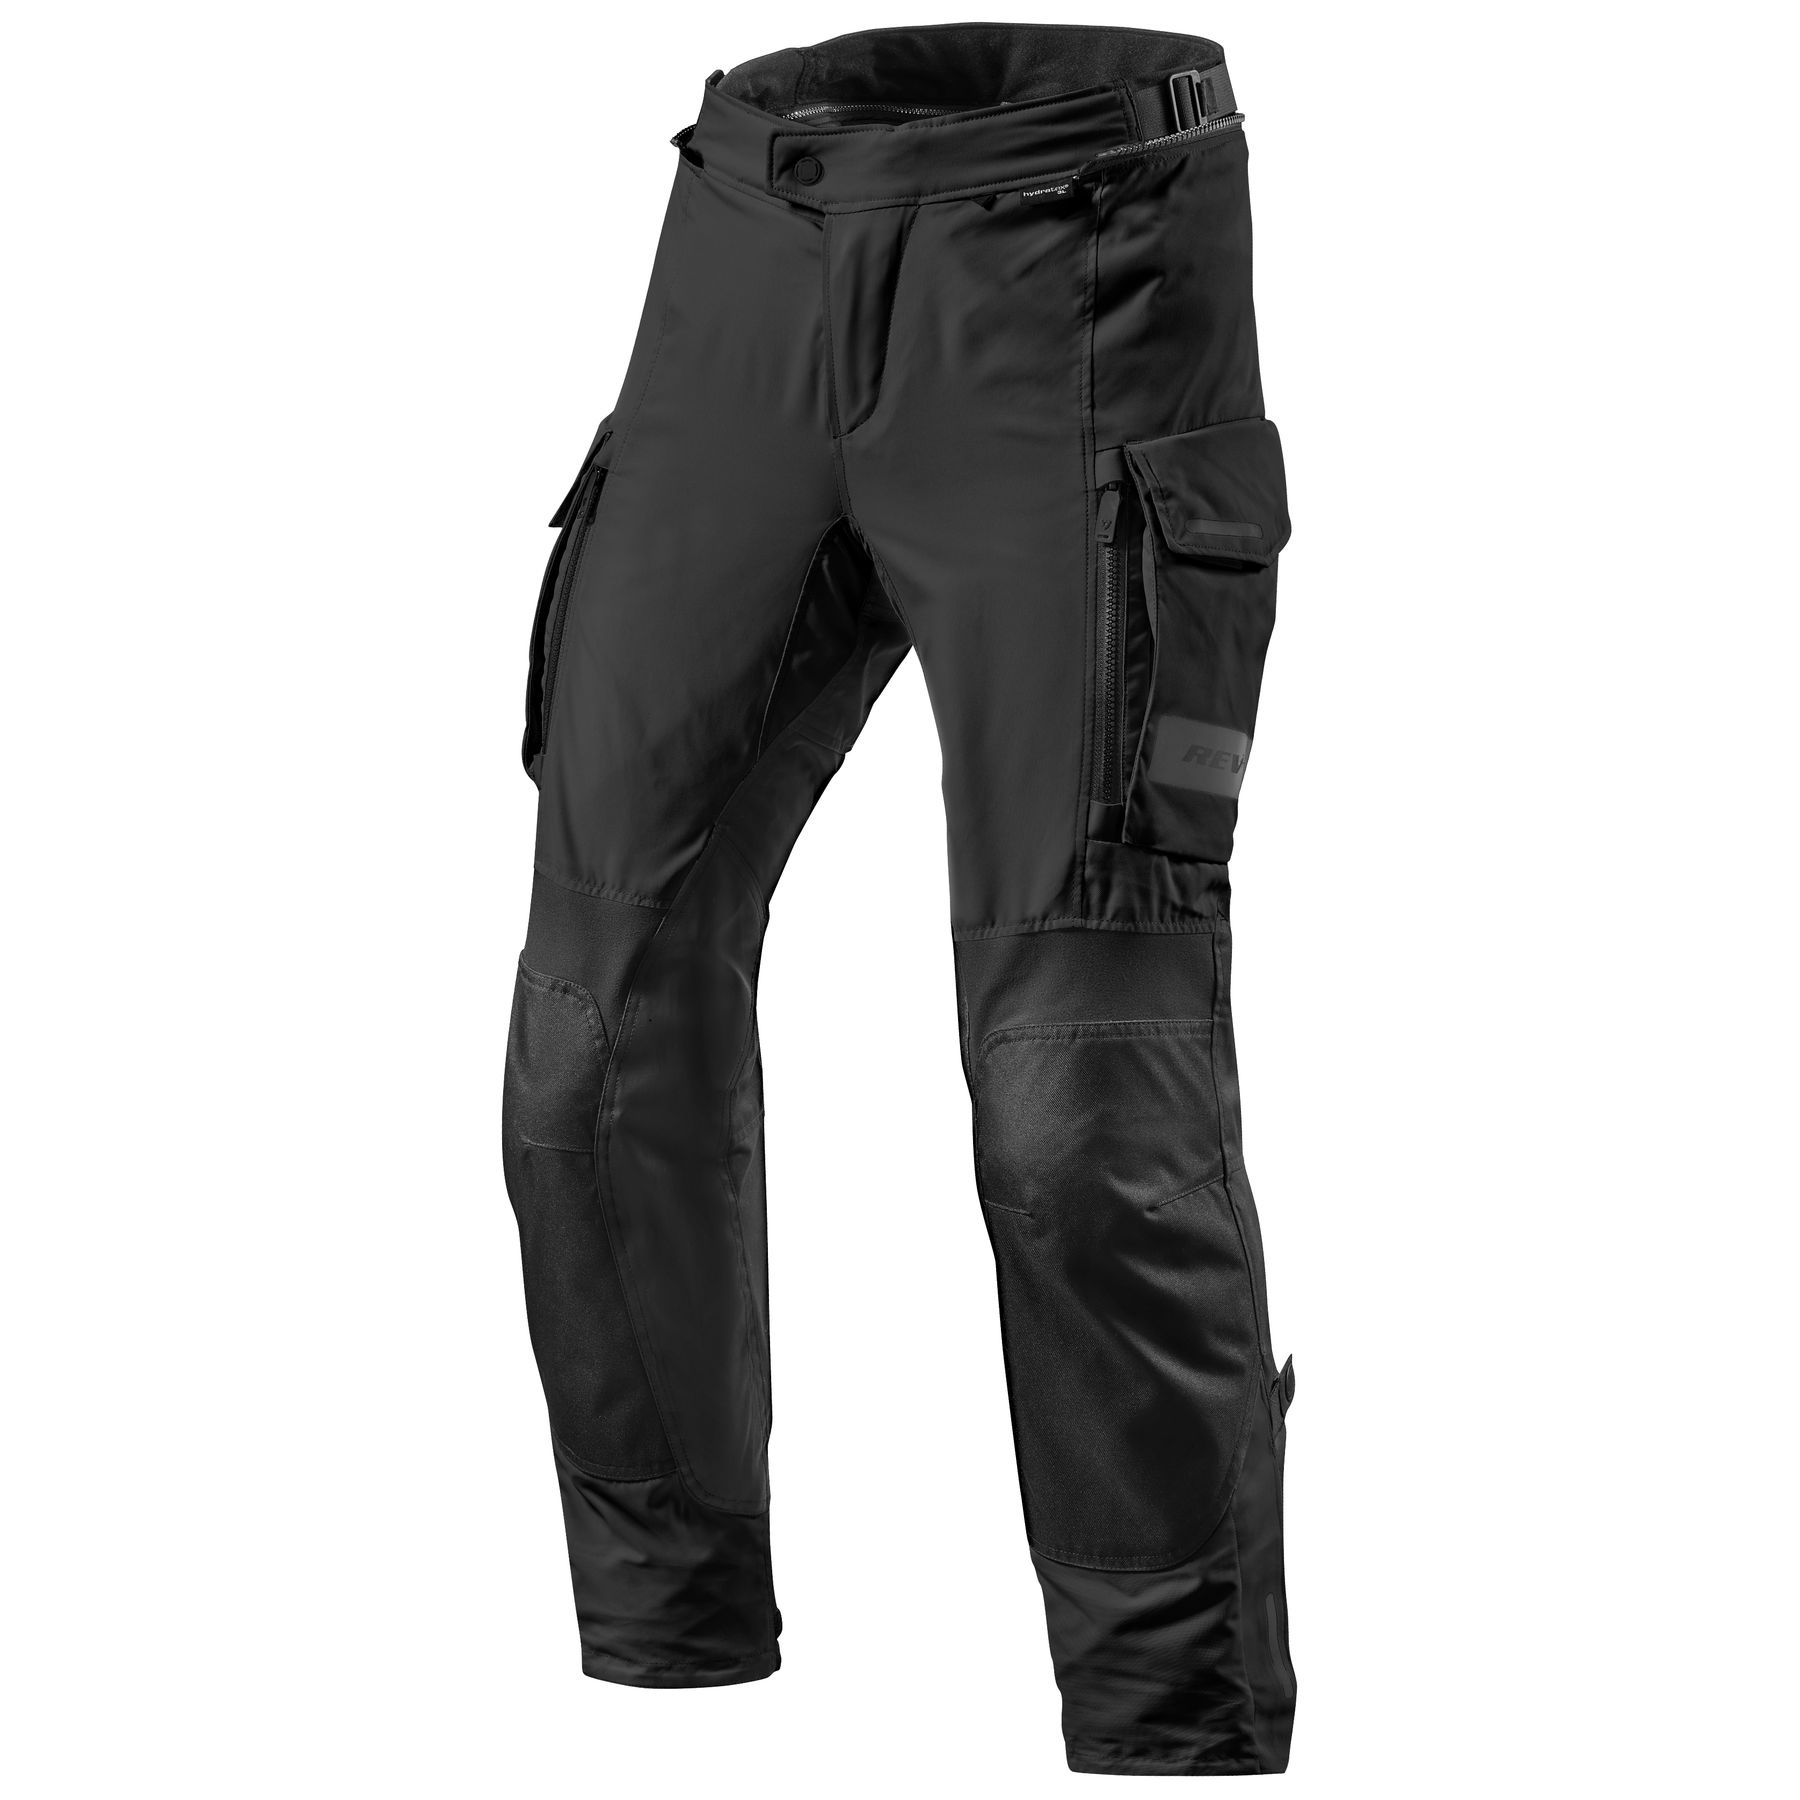 NORMAN Motorbike Motorcycle Waterproof Cordura Textile Trousers Pants Armours Black/Grey